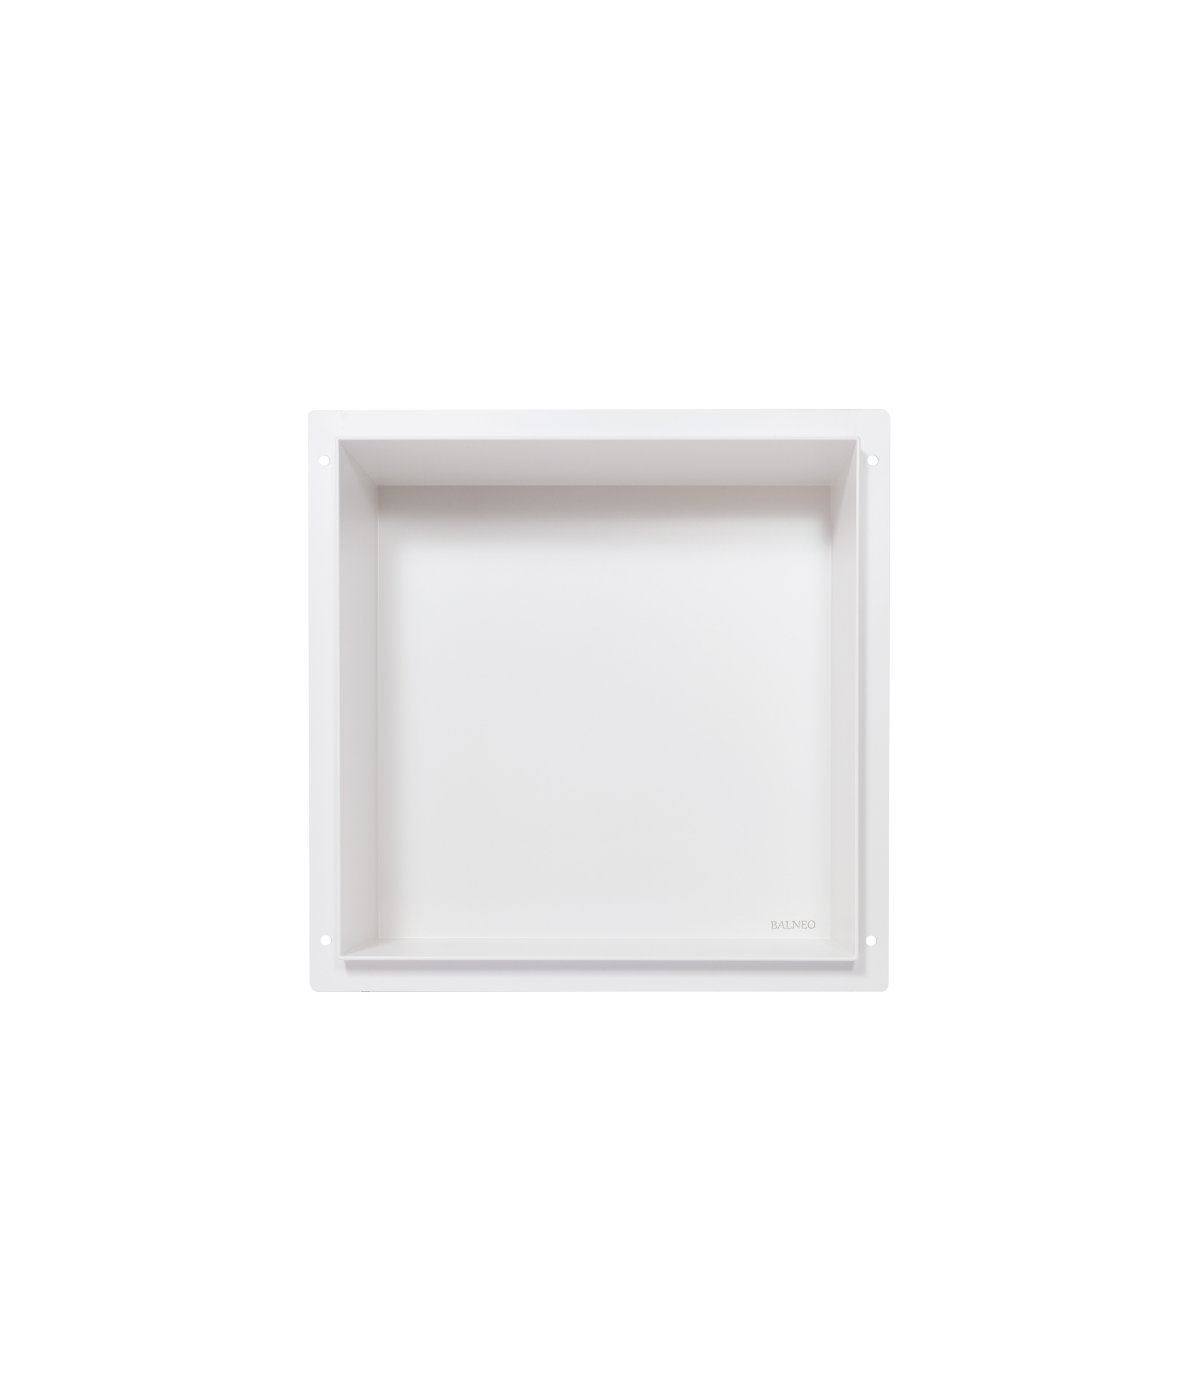 Duschnische Wandnische WALL BOX NO RIM 30x30x10 cm Weiß